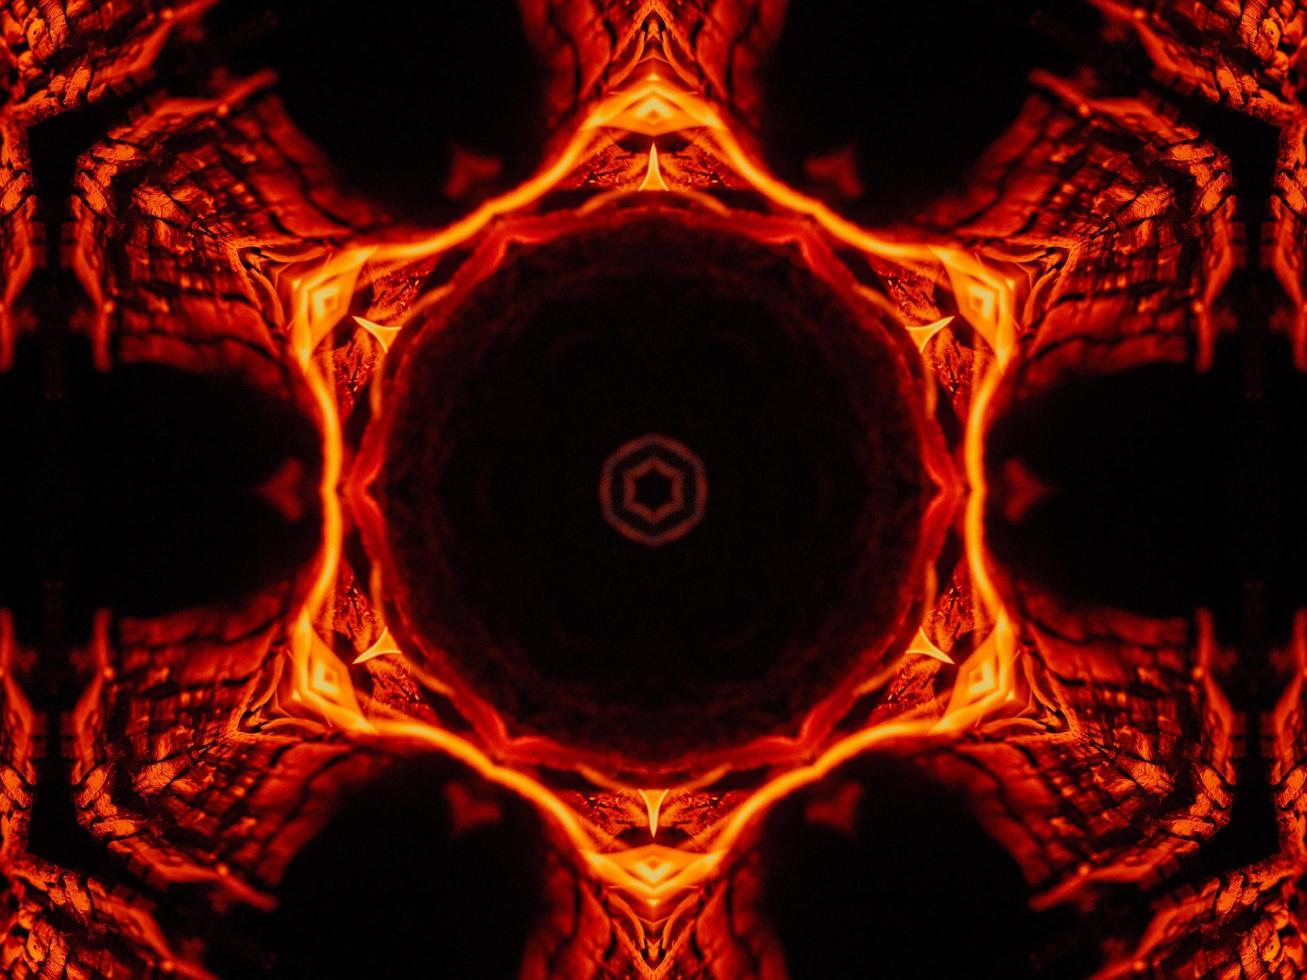 fondo abstracto único. patrón de caleidoscopio de llamas naranjas. foto gratis